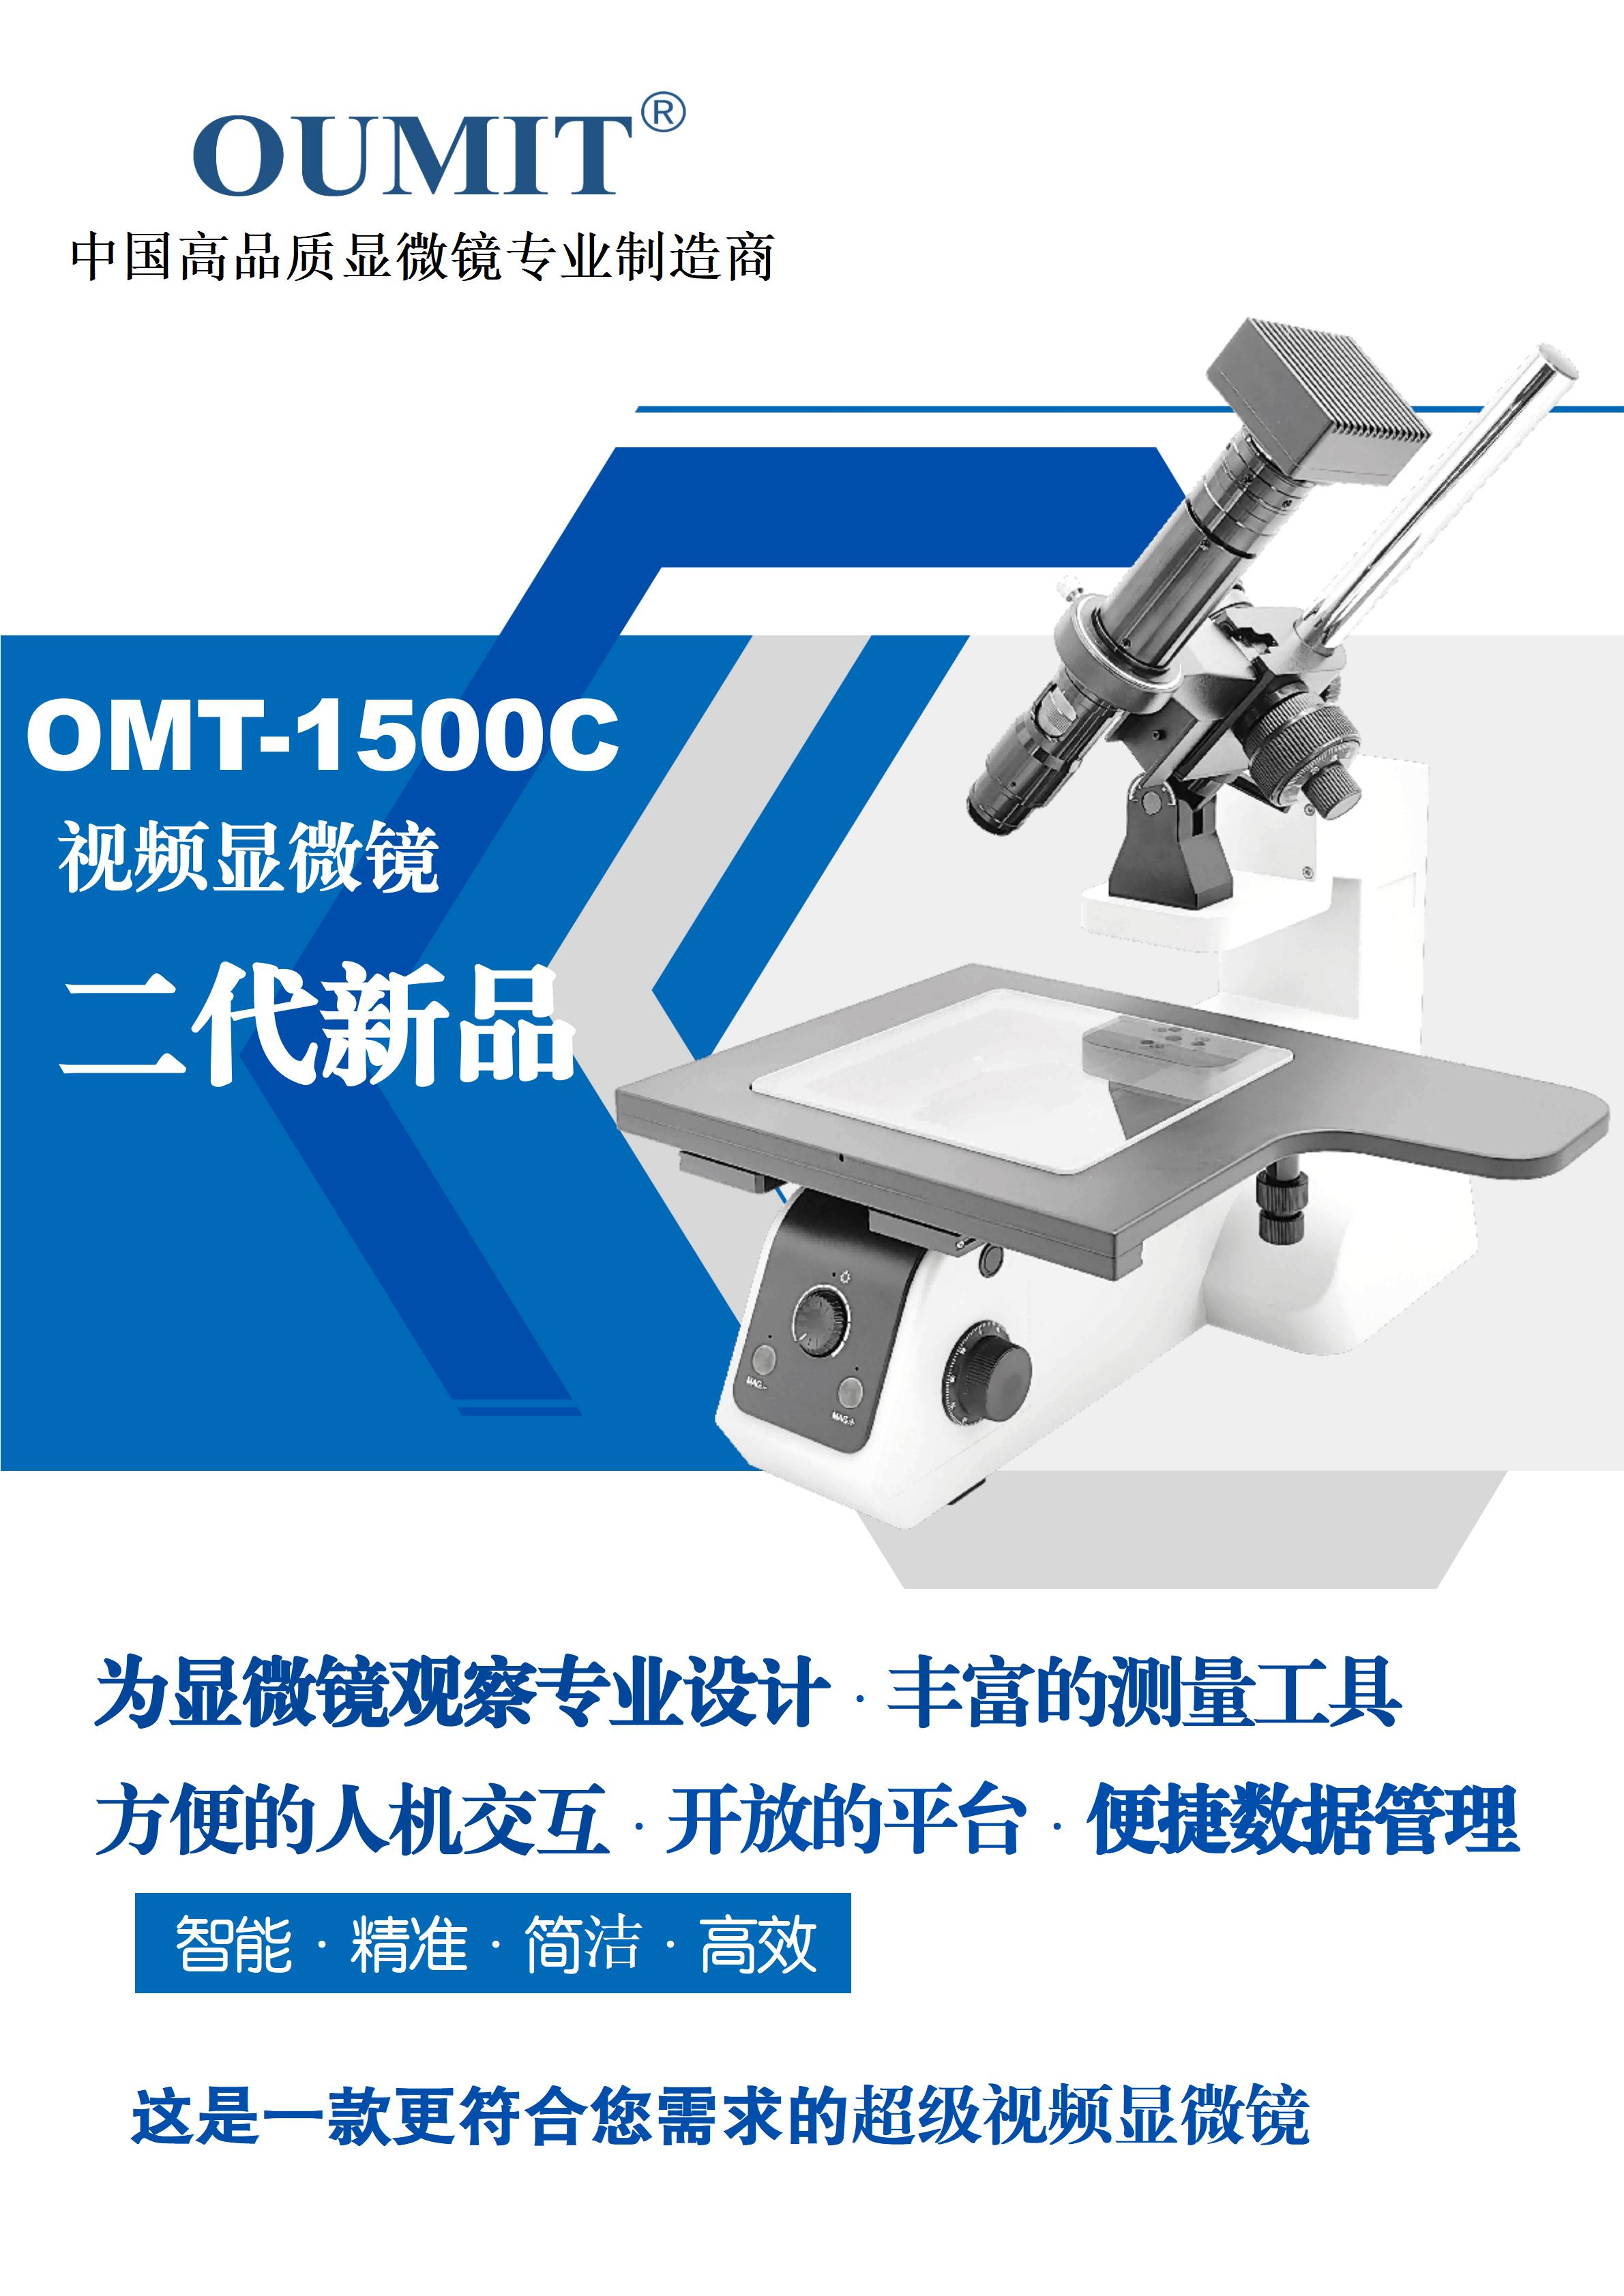 OMT-1500C超级视频杭州测量显微镜-2023_01.jpg